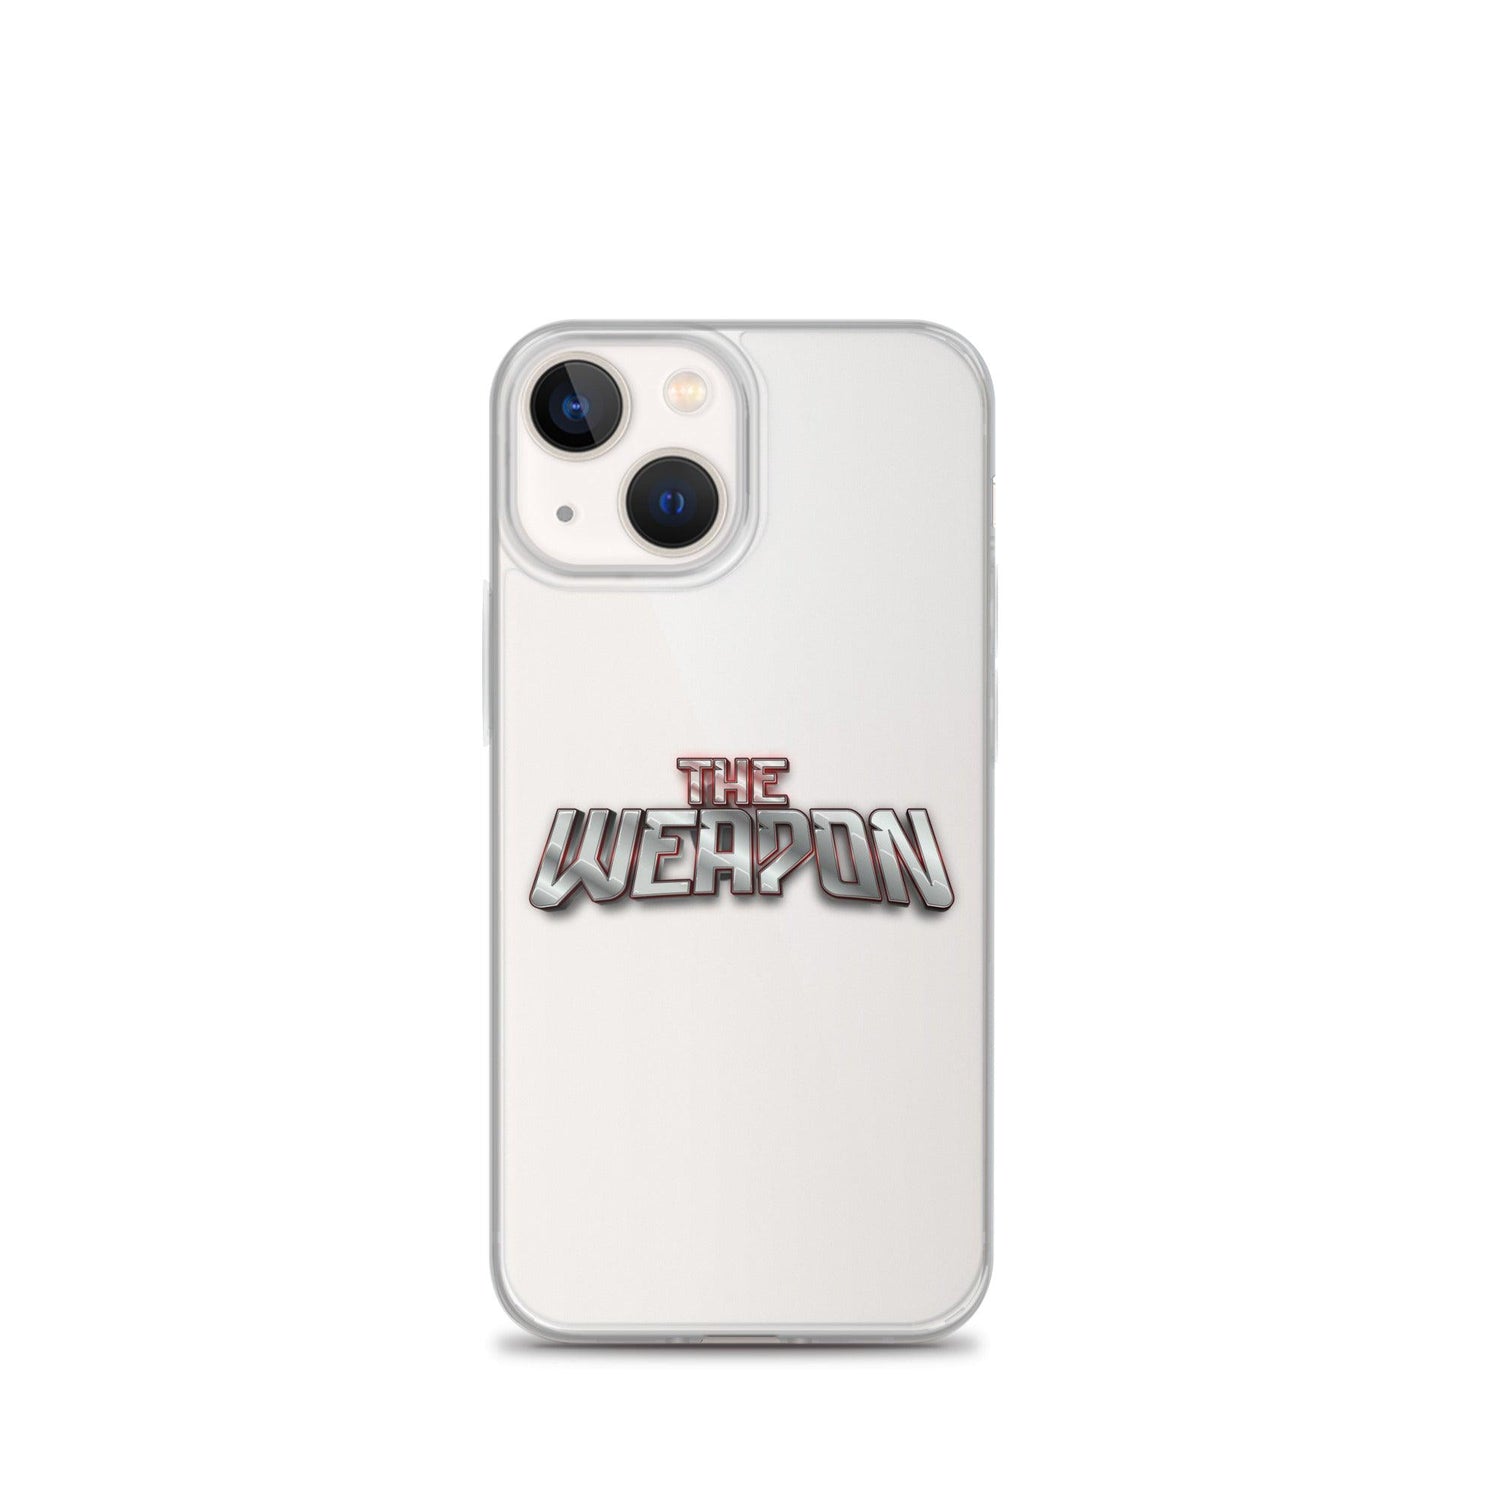 Aubrey Ward Jr. "The Weapon" iPhone Case - Fan Arch